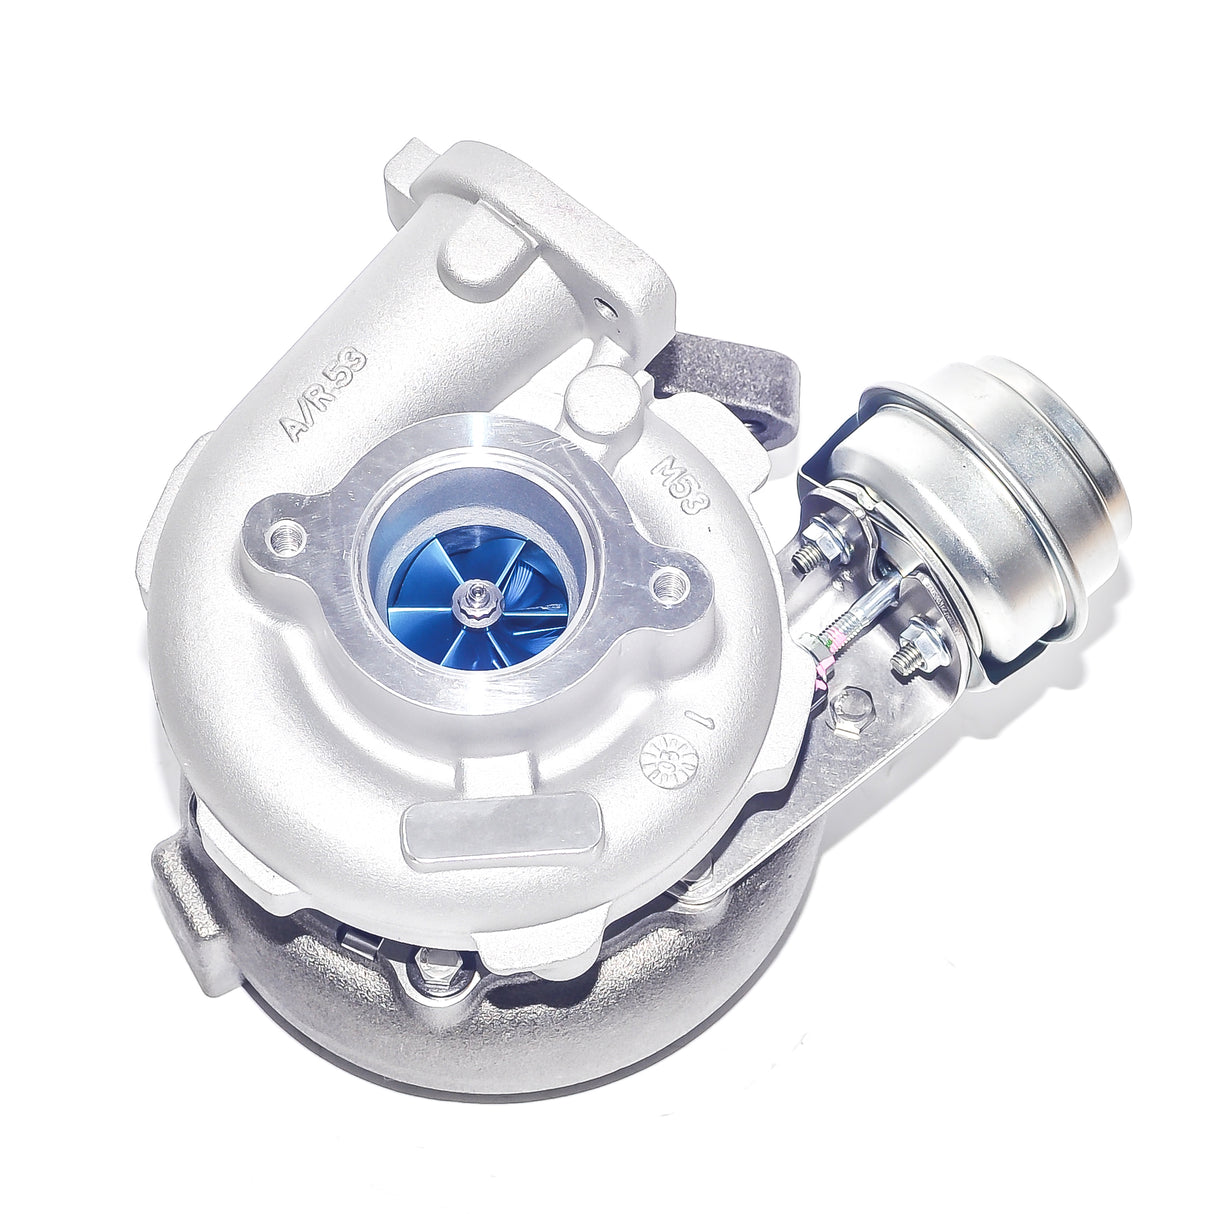 𝐒𝐓𝐀𝐆𝐄 𝟏 CCT Upgrade Hi-Flow Turbocharger To Suit Nissan Navara D40 / Pathfinder YD25 2.5L 3-bolt flange